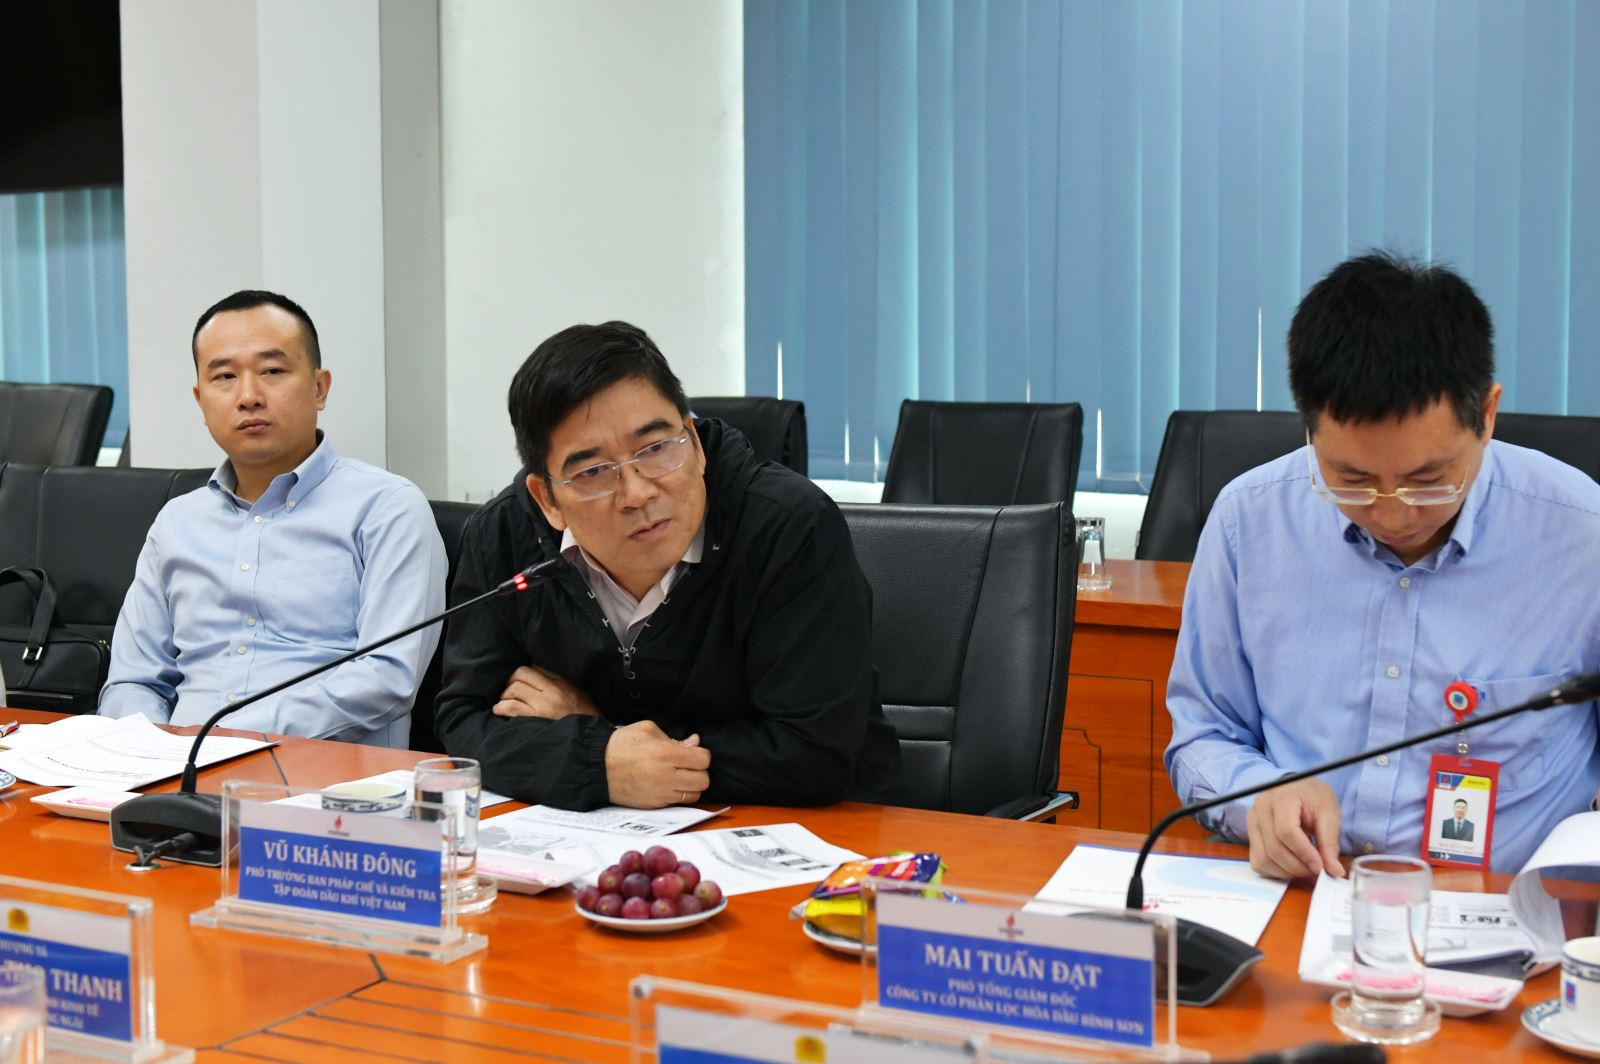 Phó Trưởng Ban Pháp chế và kiểm tra PVN Vũ Khánh Đông phát biểu tại buổi làm việc.